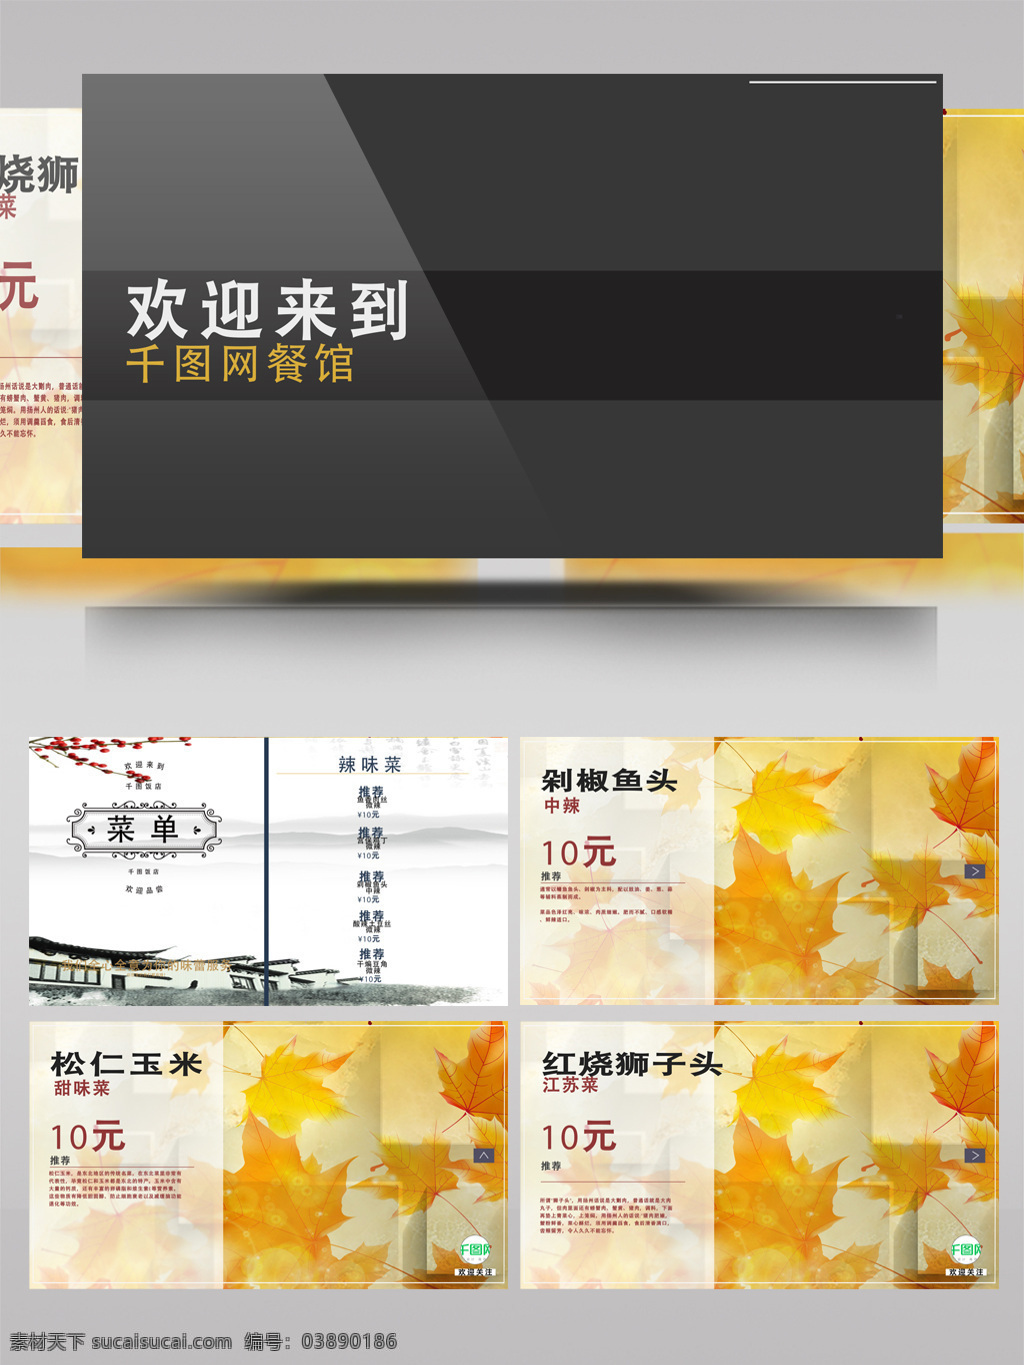 餐厅 美味 新品 招牌 菜 广告牌 菜单 宣传 视频制作 ae 模板 枫叶 厨师 数码 食品 标志 江南风景 书 显示